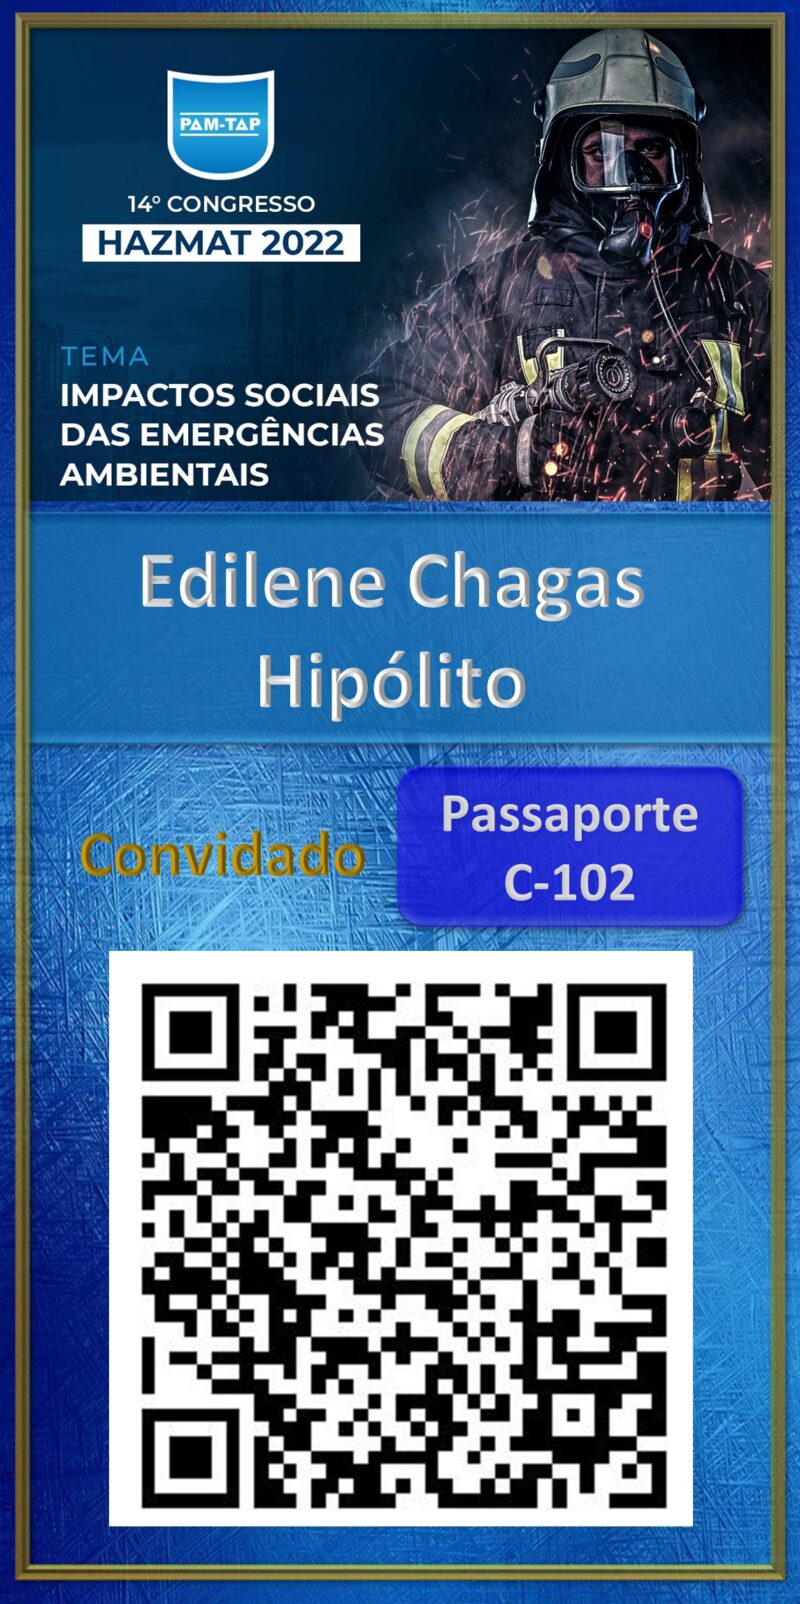 Edilene Chagas Hipólito-Hazmat 2022-Aluno